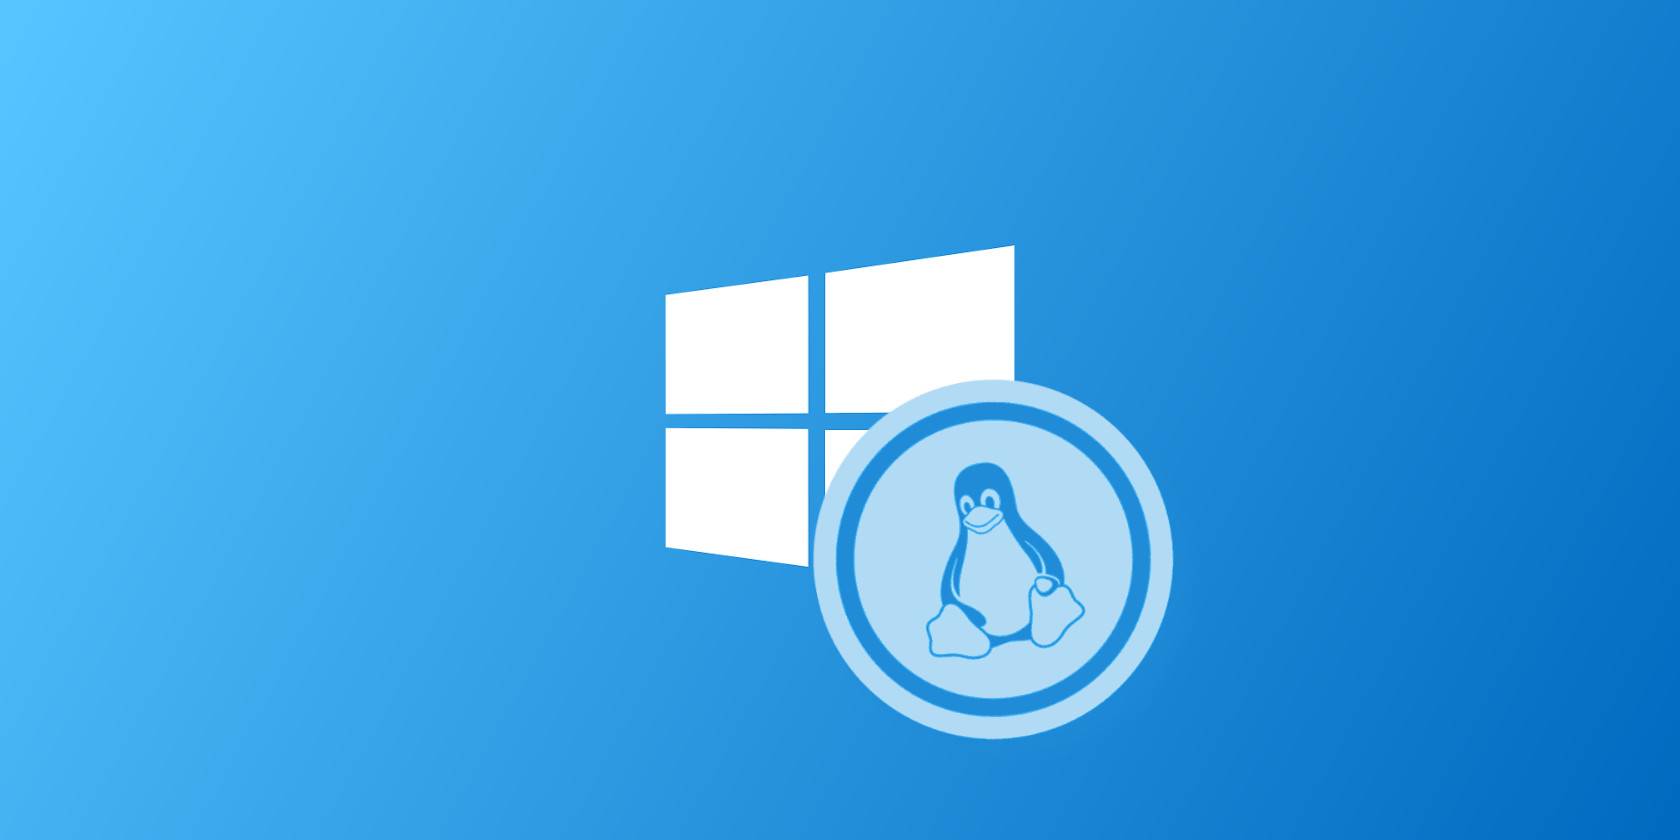  logo windows sous linux 